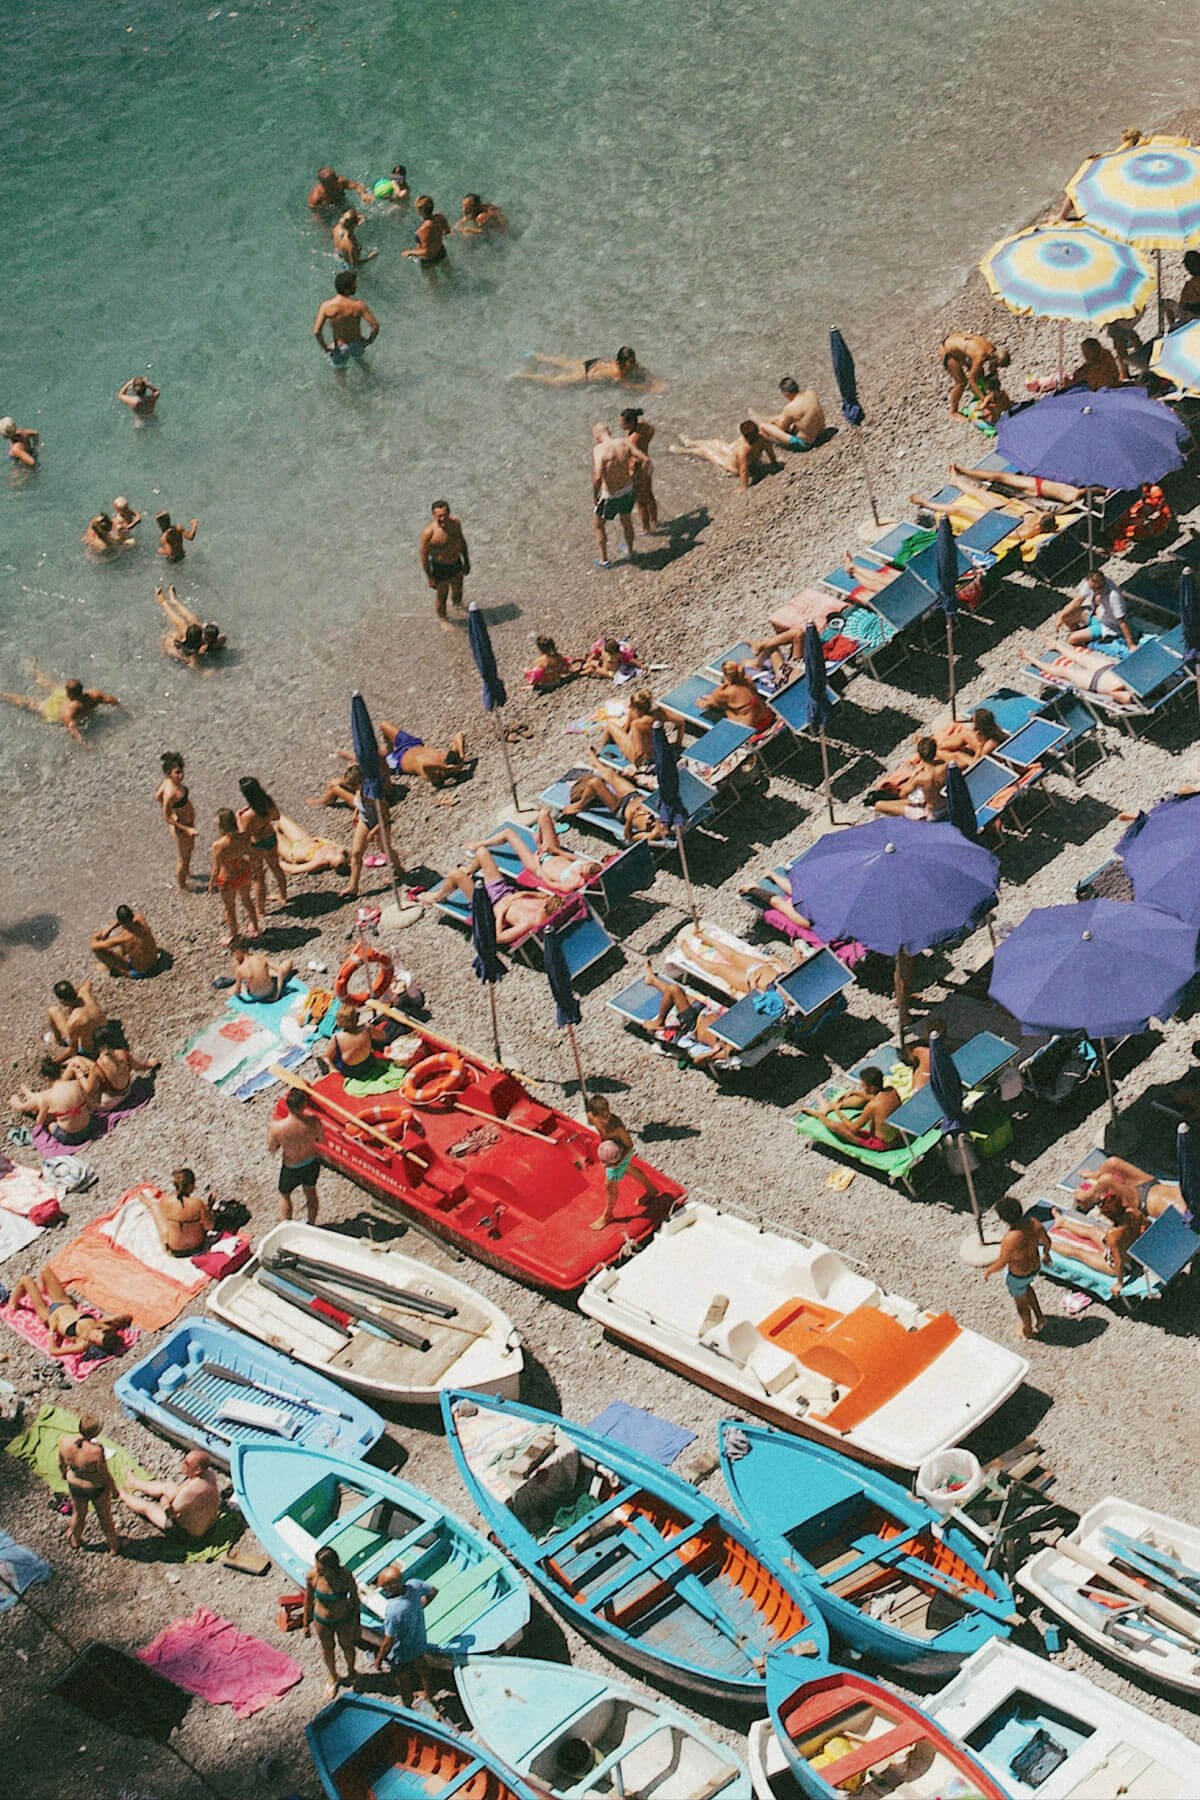 The best beaches in Positano: Spiaggia Grande, Fornillo Beach, Laurito Beach, and Arienzo Beach